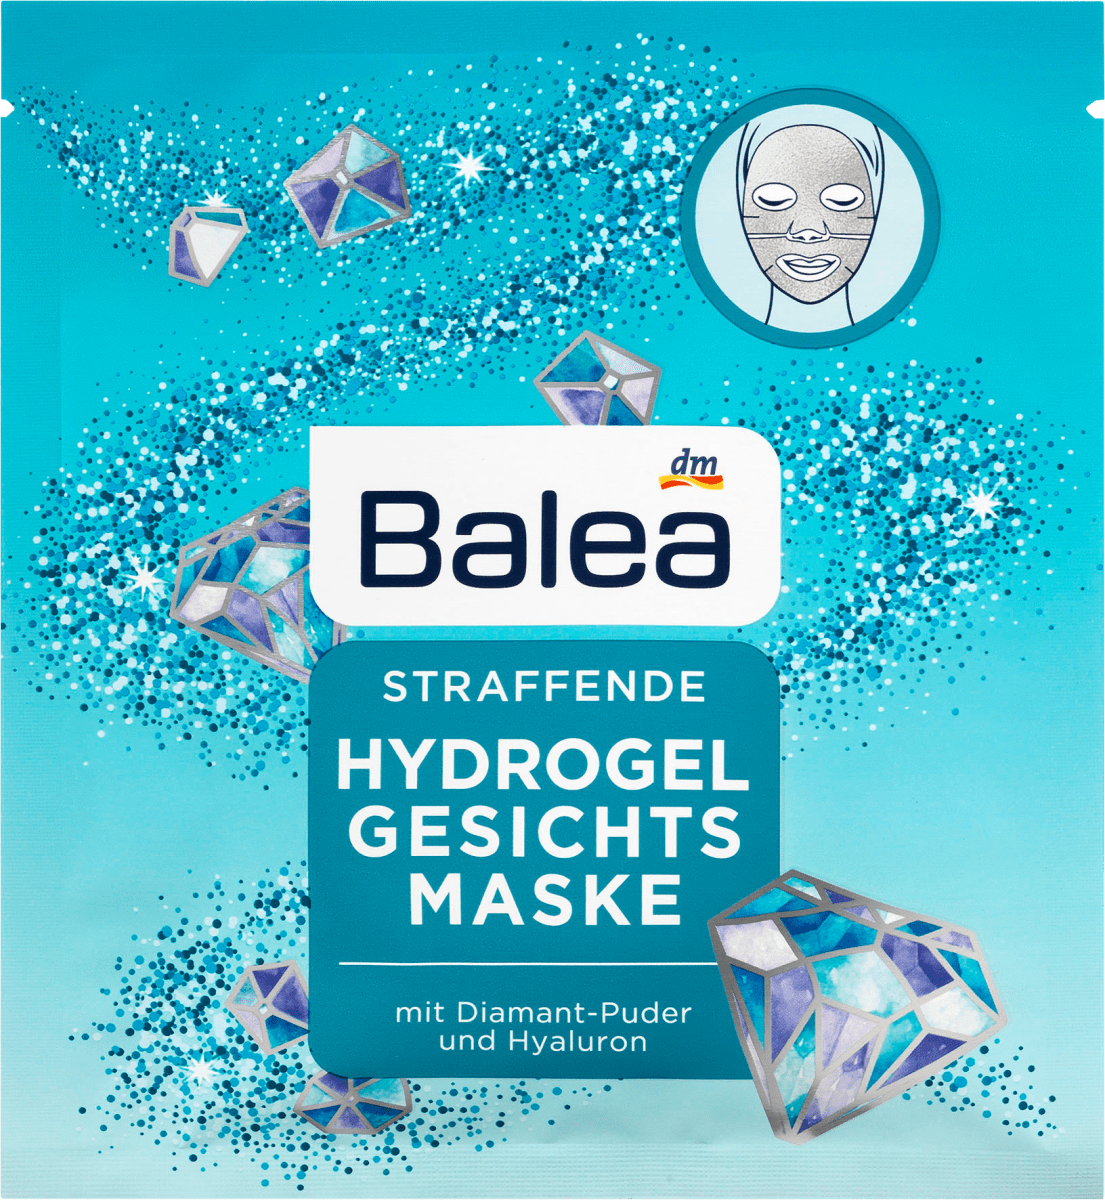 Balea Hydrogel Maske Gesicht Diamant 1 St Dauerhaft Gunstig Online Kaufen Dm De